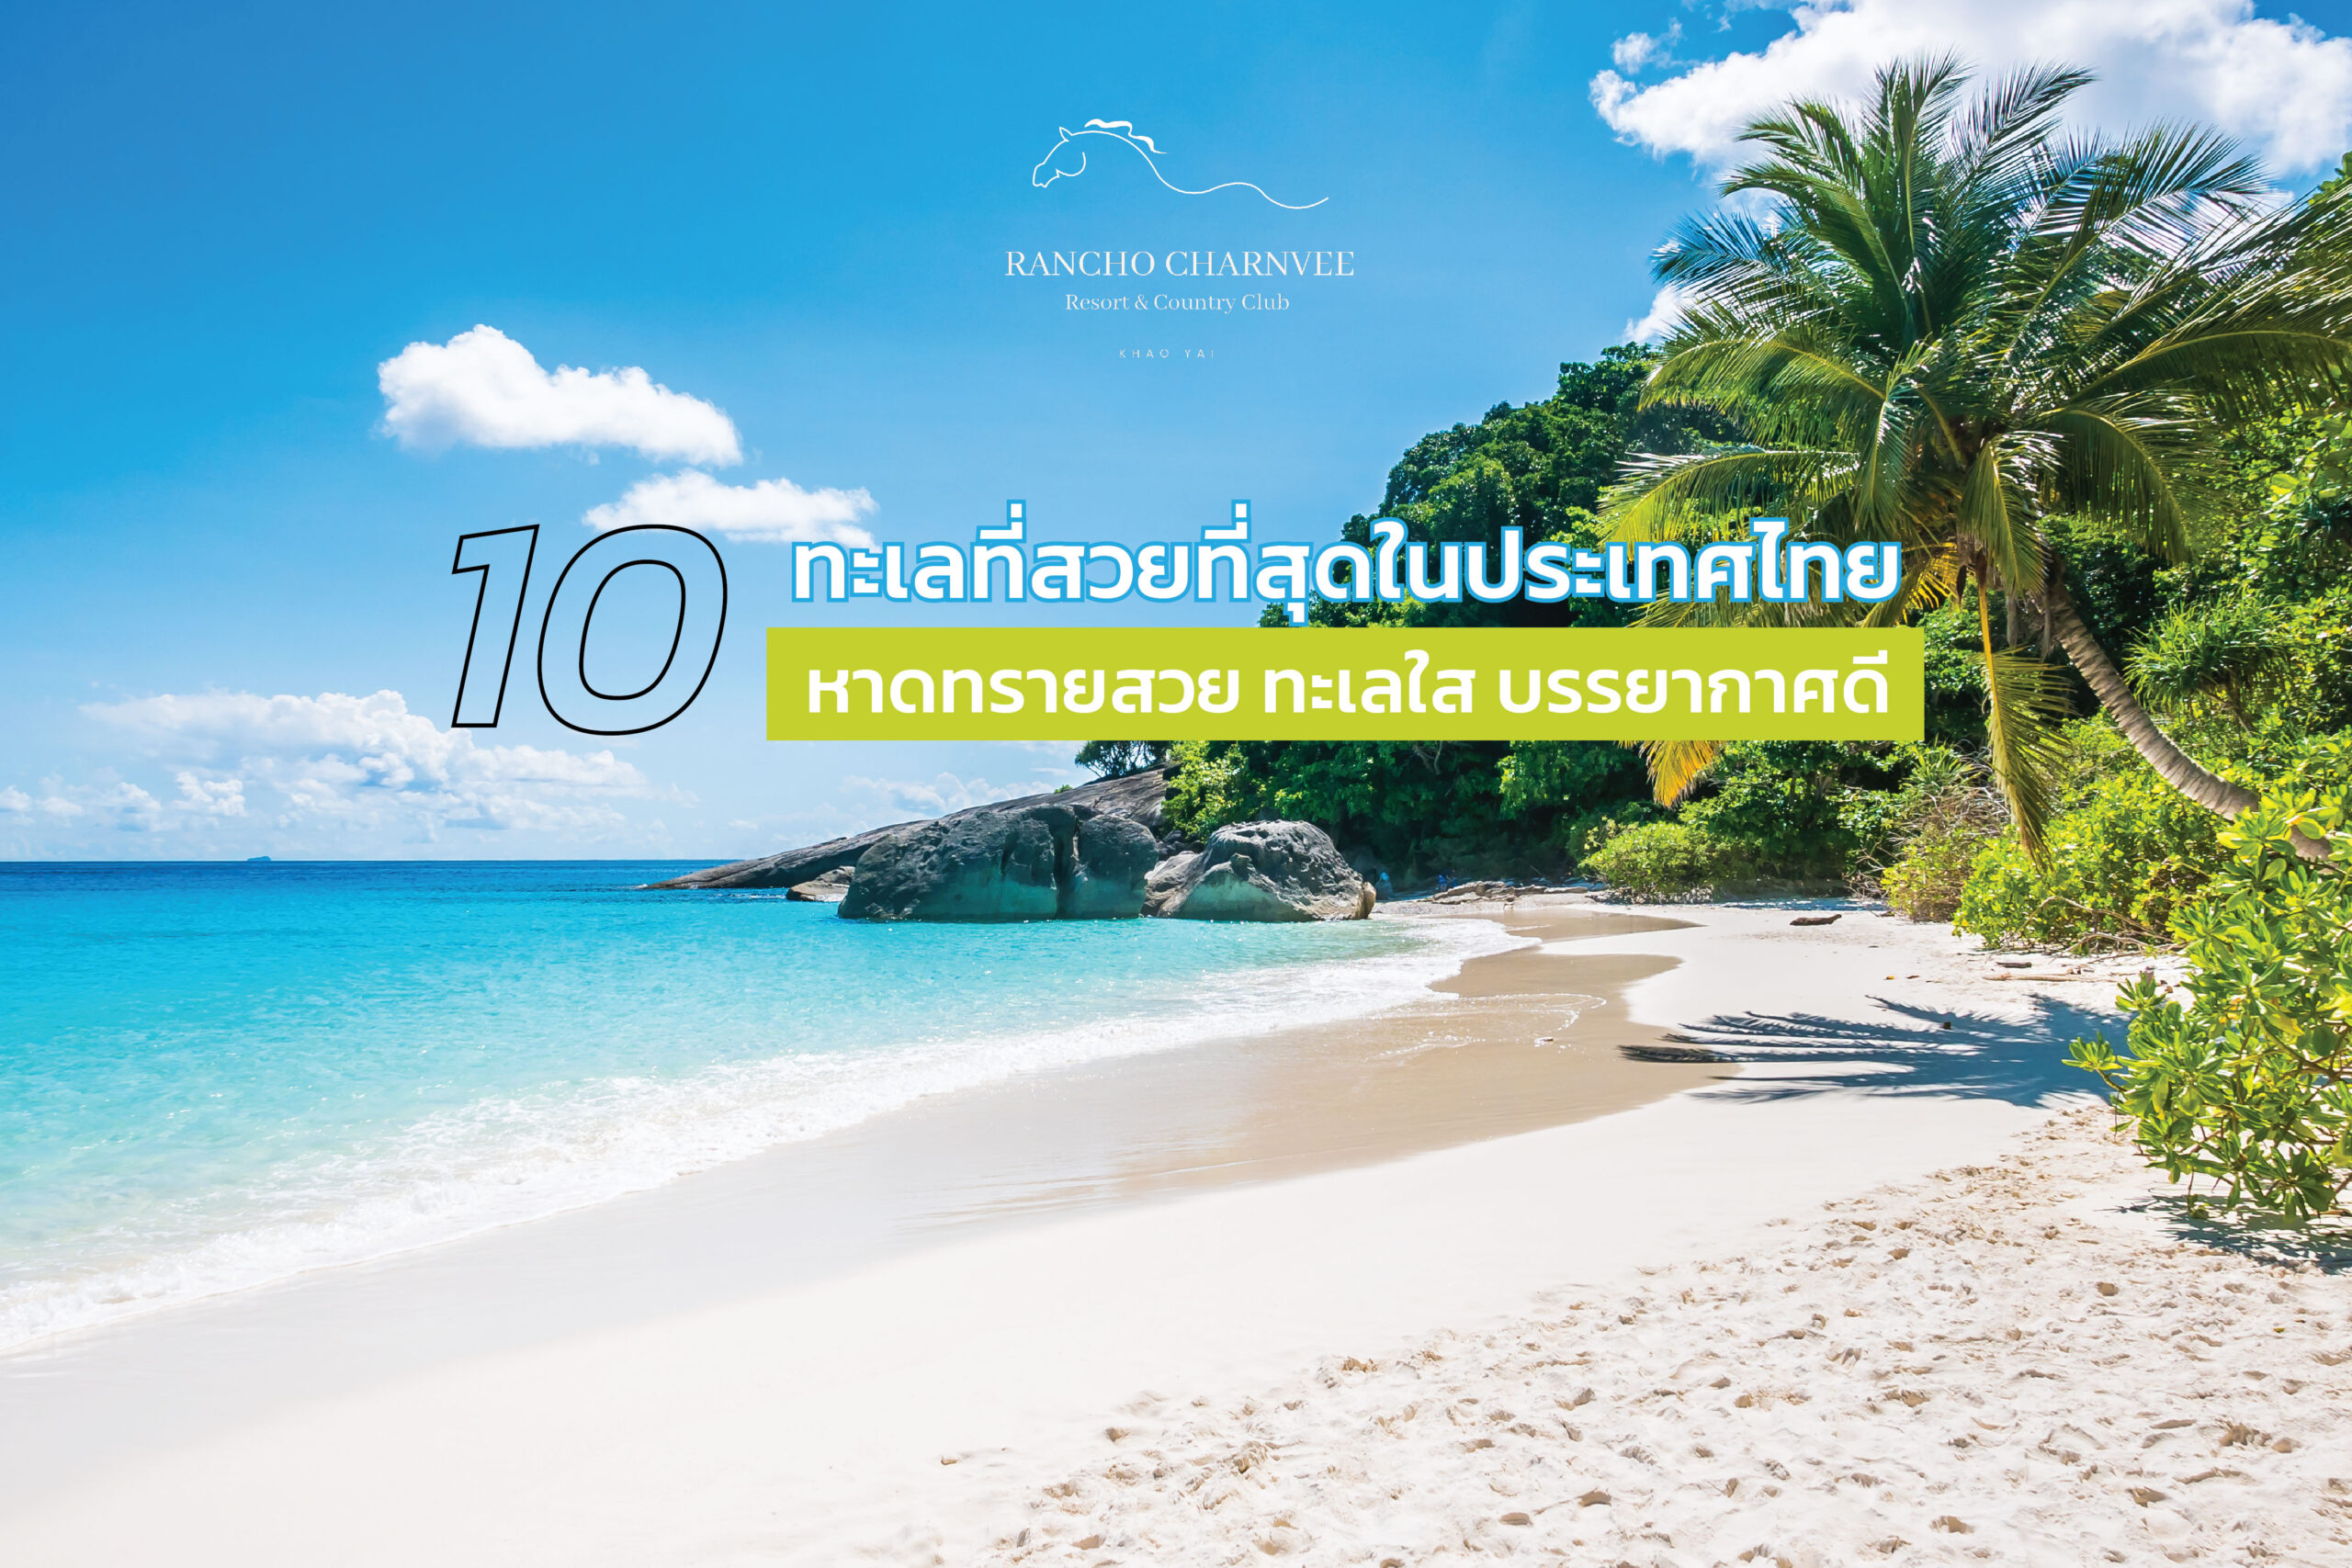 10 ทะเลที่สวยที่สุดในประเทศไทย หาดทรายสวย ทะเลใส บรรยากาศดี